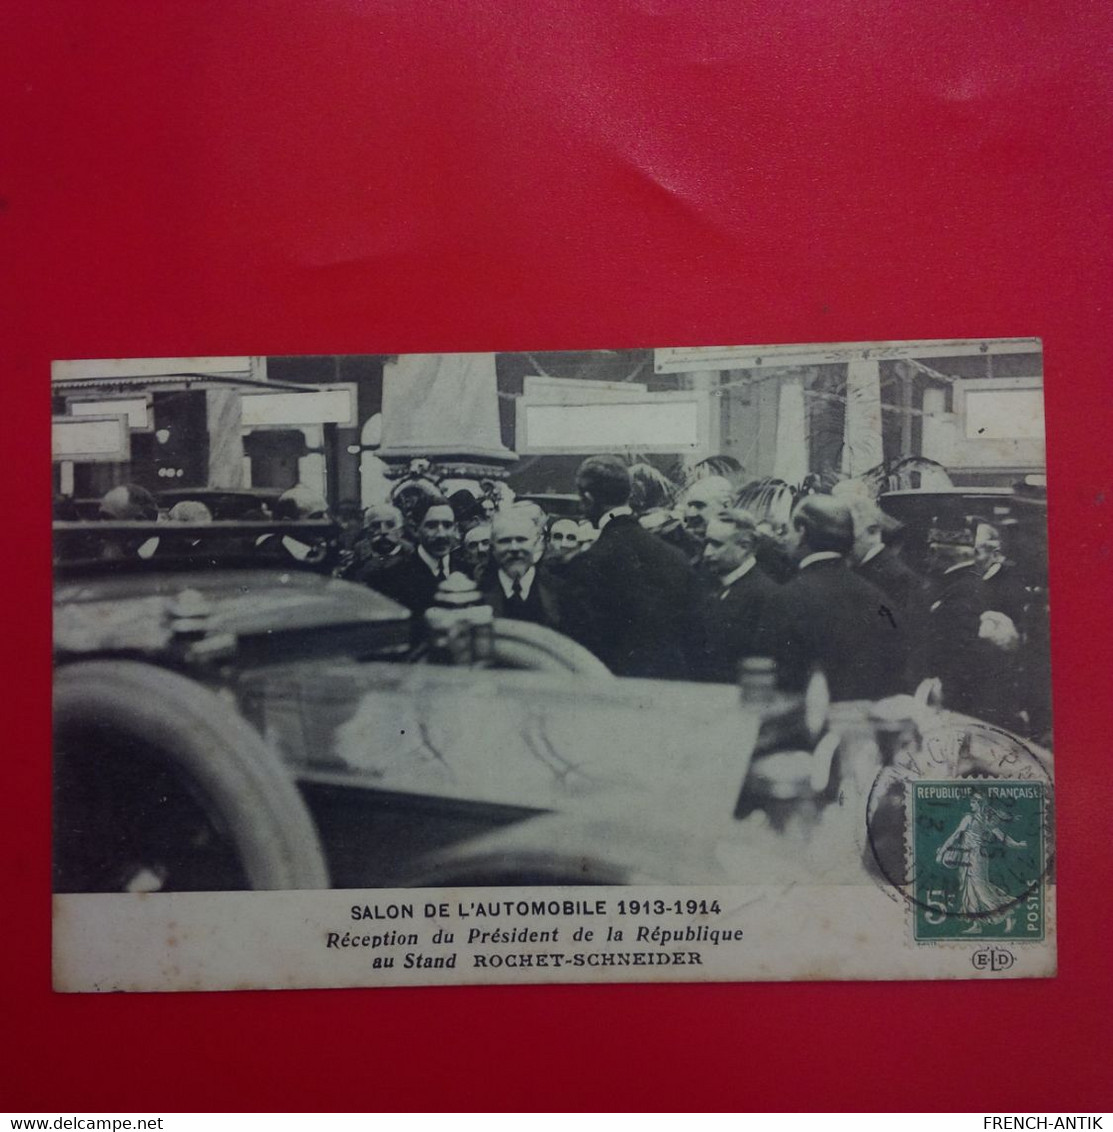 SALON DE L AUTOMOBILE 1913 1914 RECEPTION DU PRESIDENT DE LA REPUBLIQUE POINCARE AU STAND ROCHET SCHNEIDER - Ereignisse